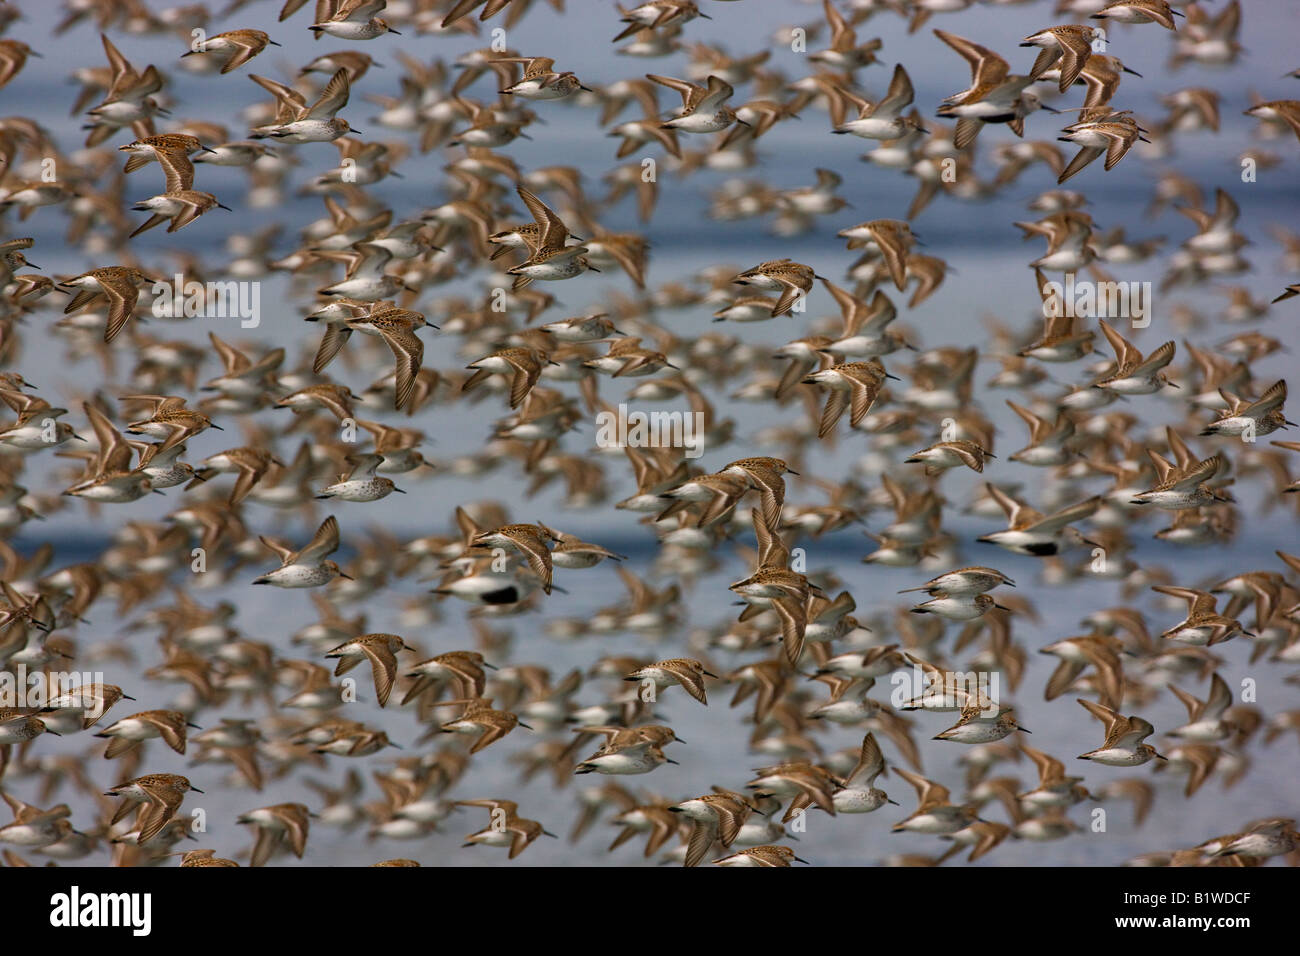 Shorebird migration on the Copper River Delta Chugach National Forest Cordova Alaska Stock Photo